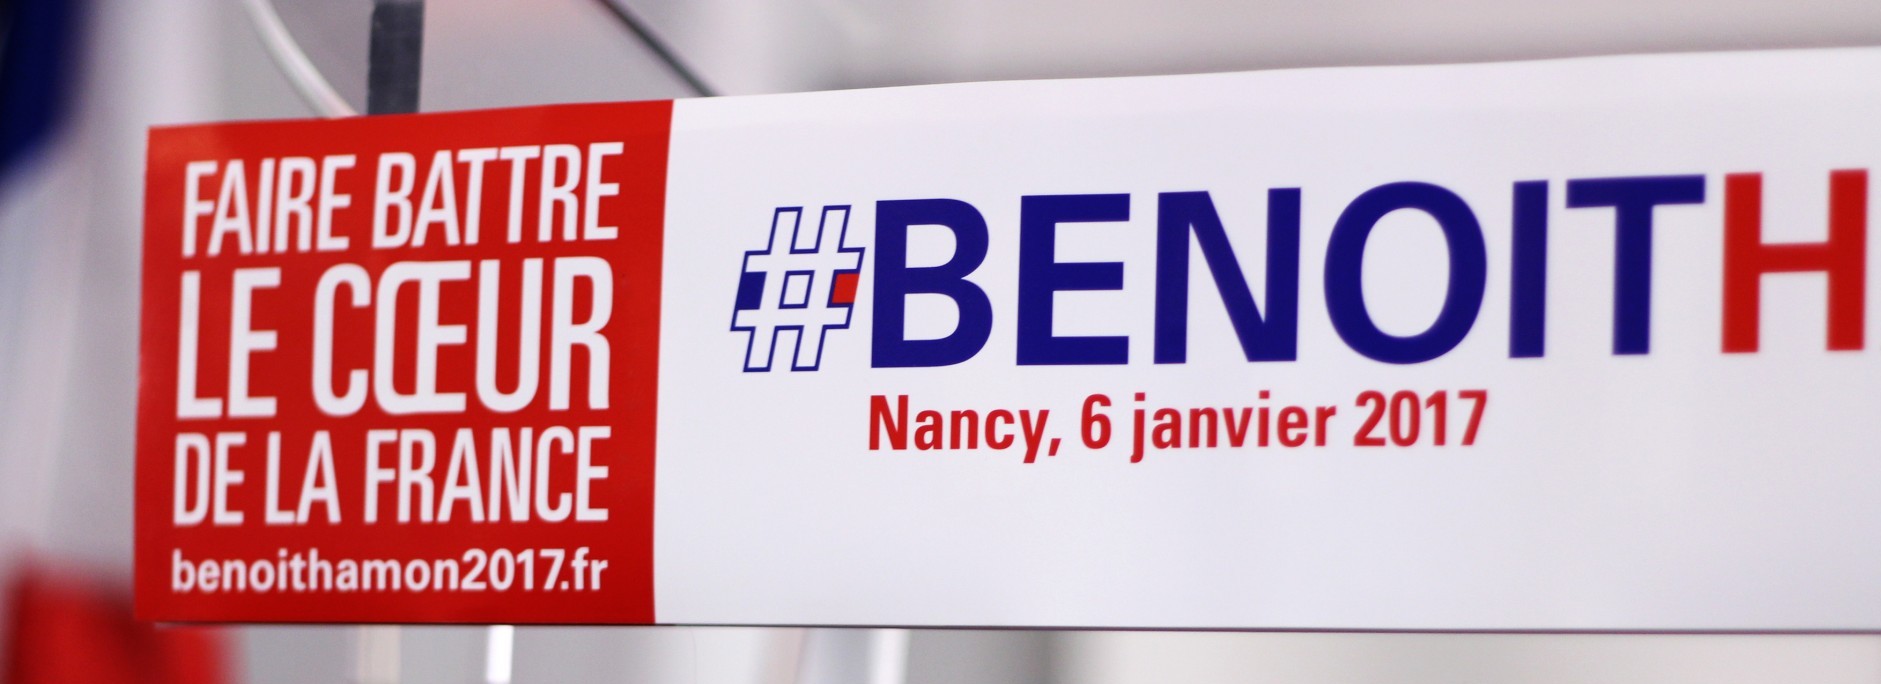 Benoît Hamon à Nancy